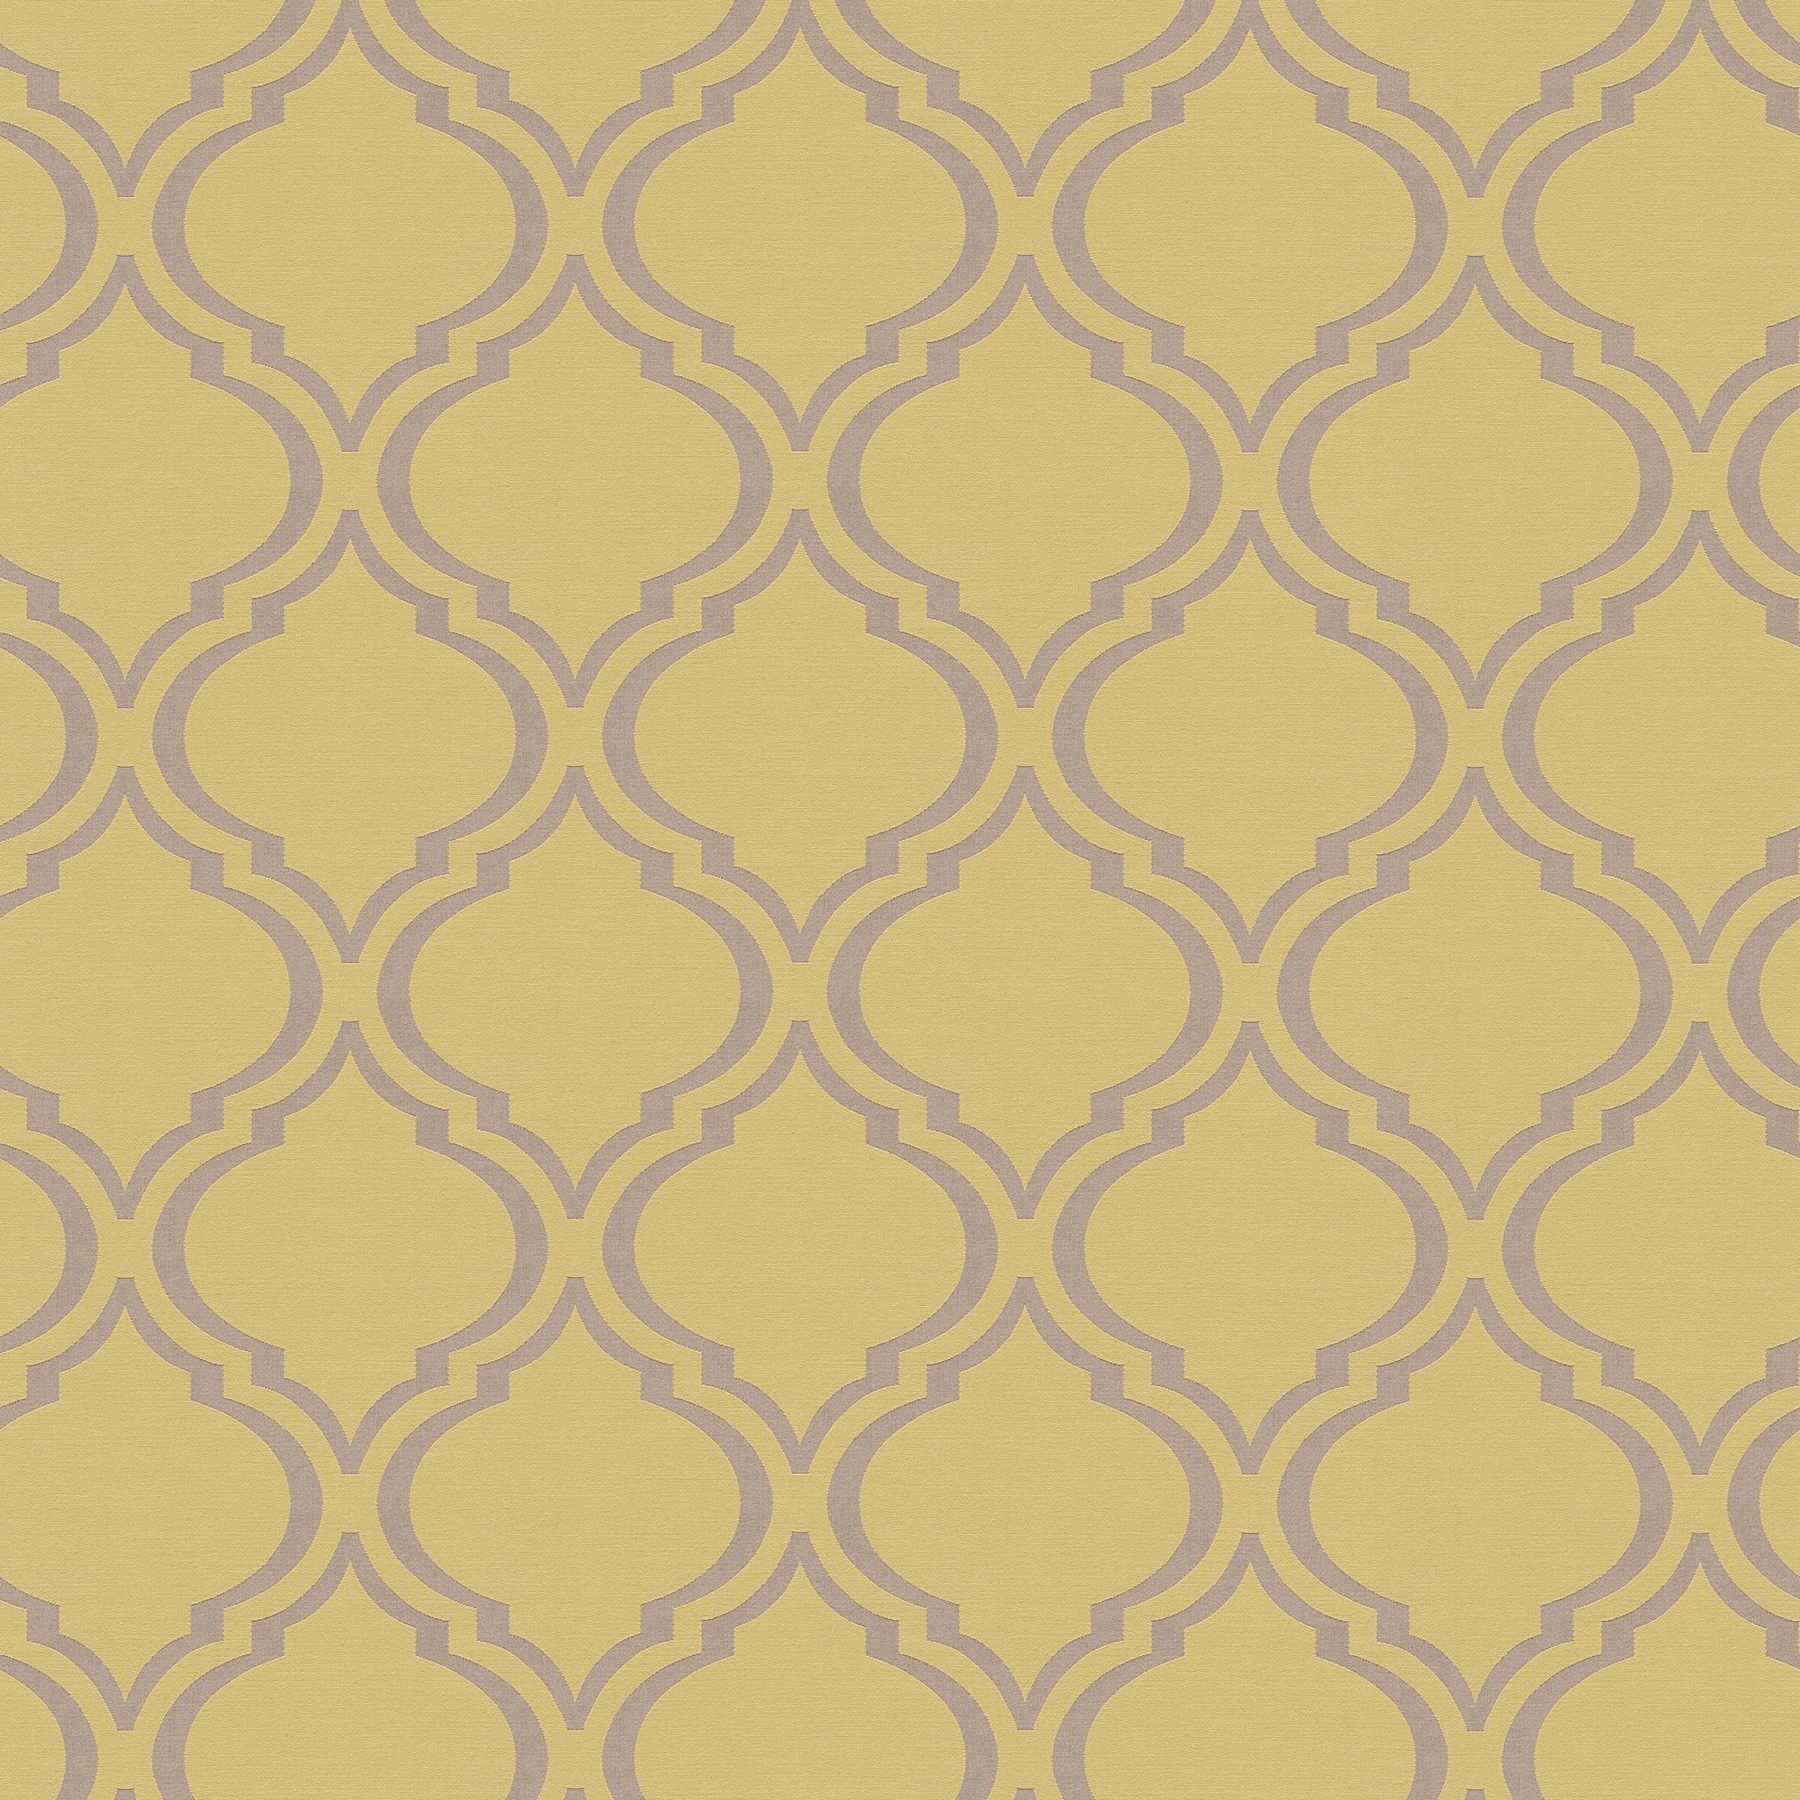         Retrotapete mit glänzenden Art Deco Muster – Gelb, Grün, Grau
    